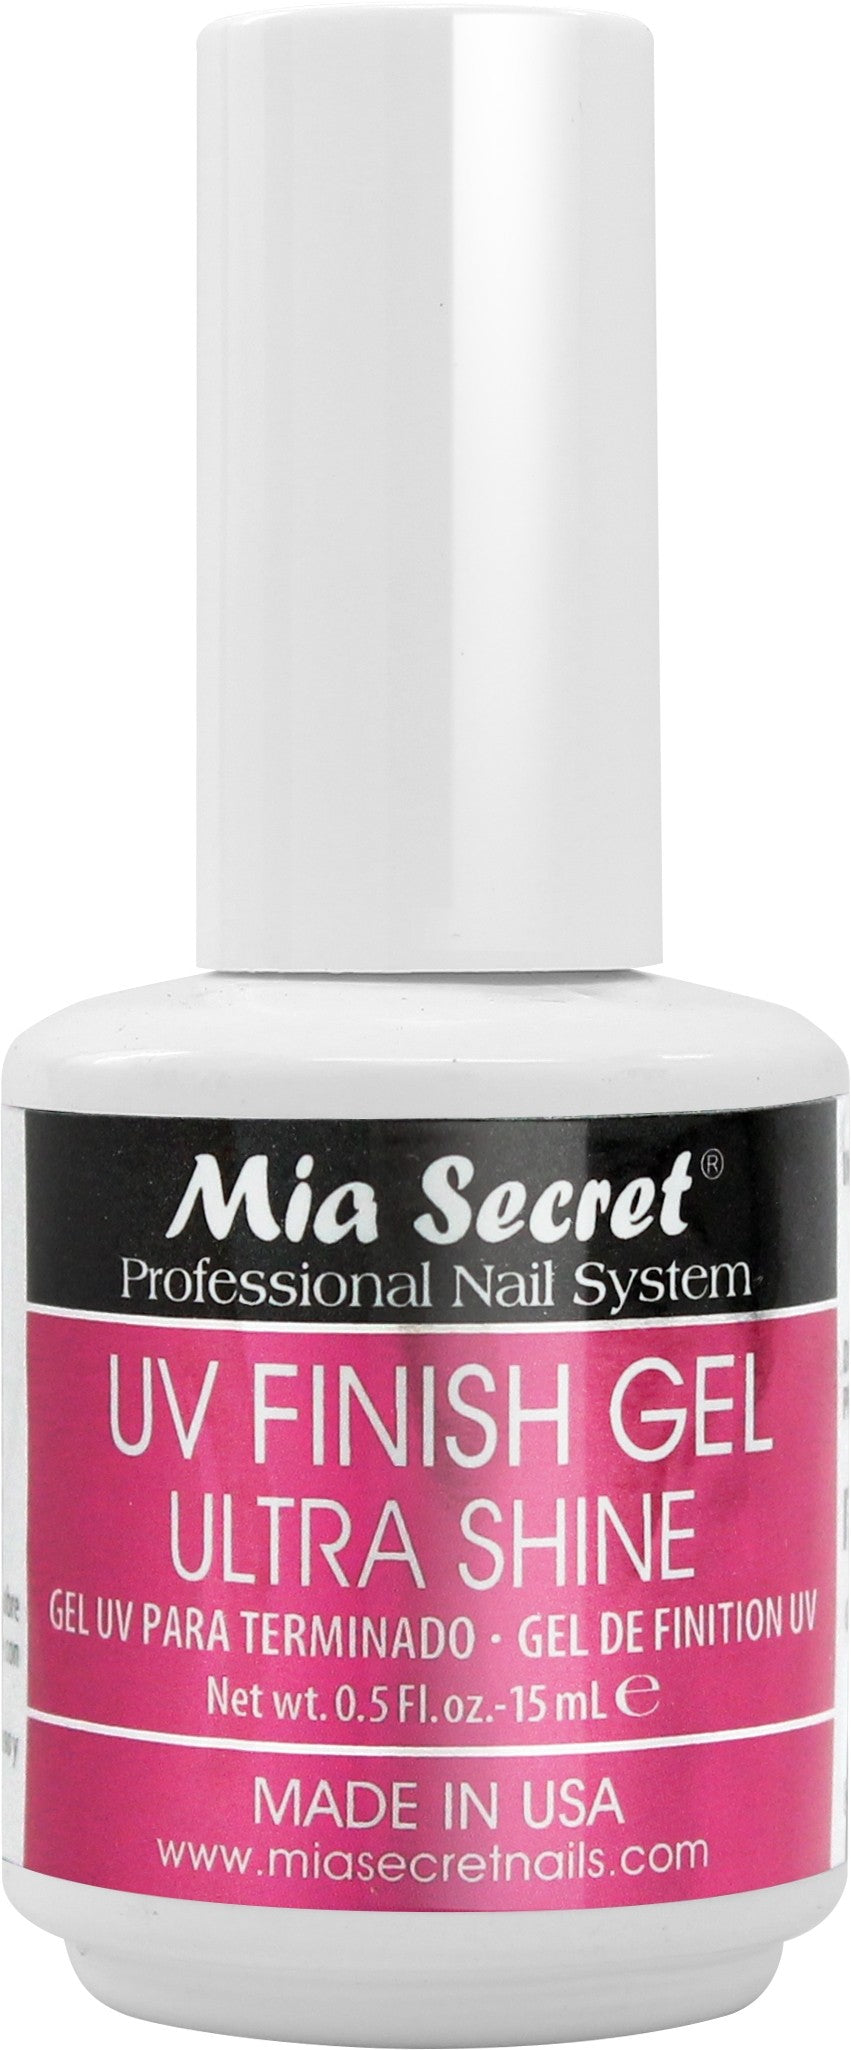 uv finish gel ultra shine, mia secret finish gel, ultra shine, nails, nail uv finish gel, uv nails, nails